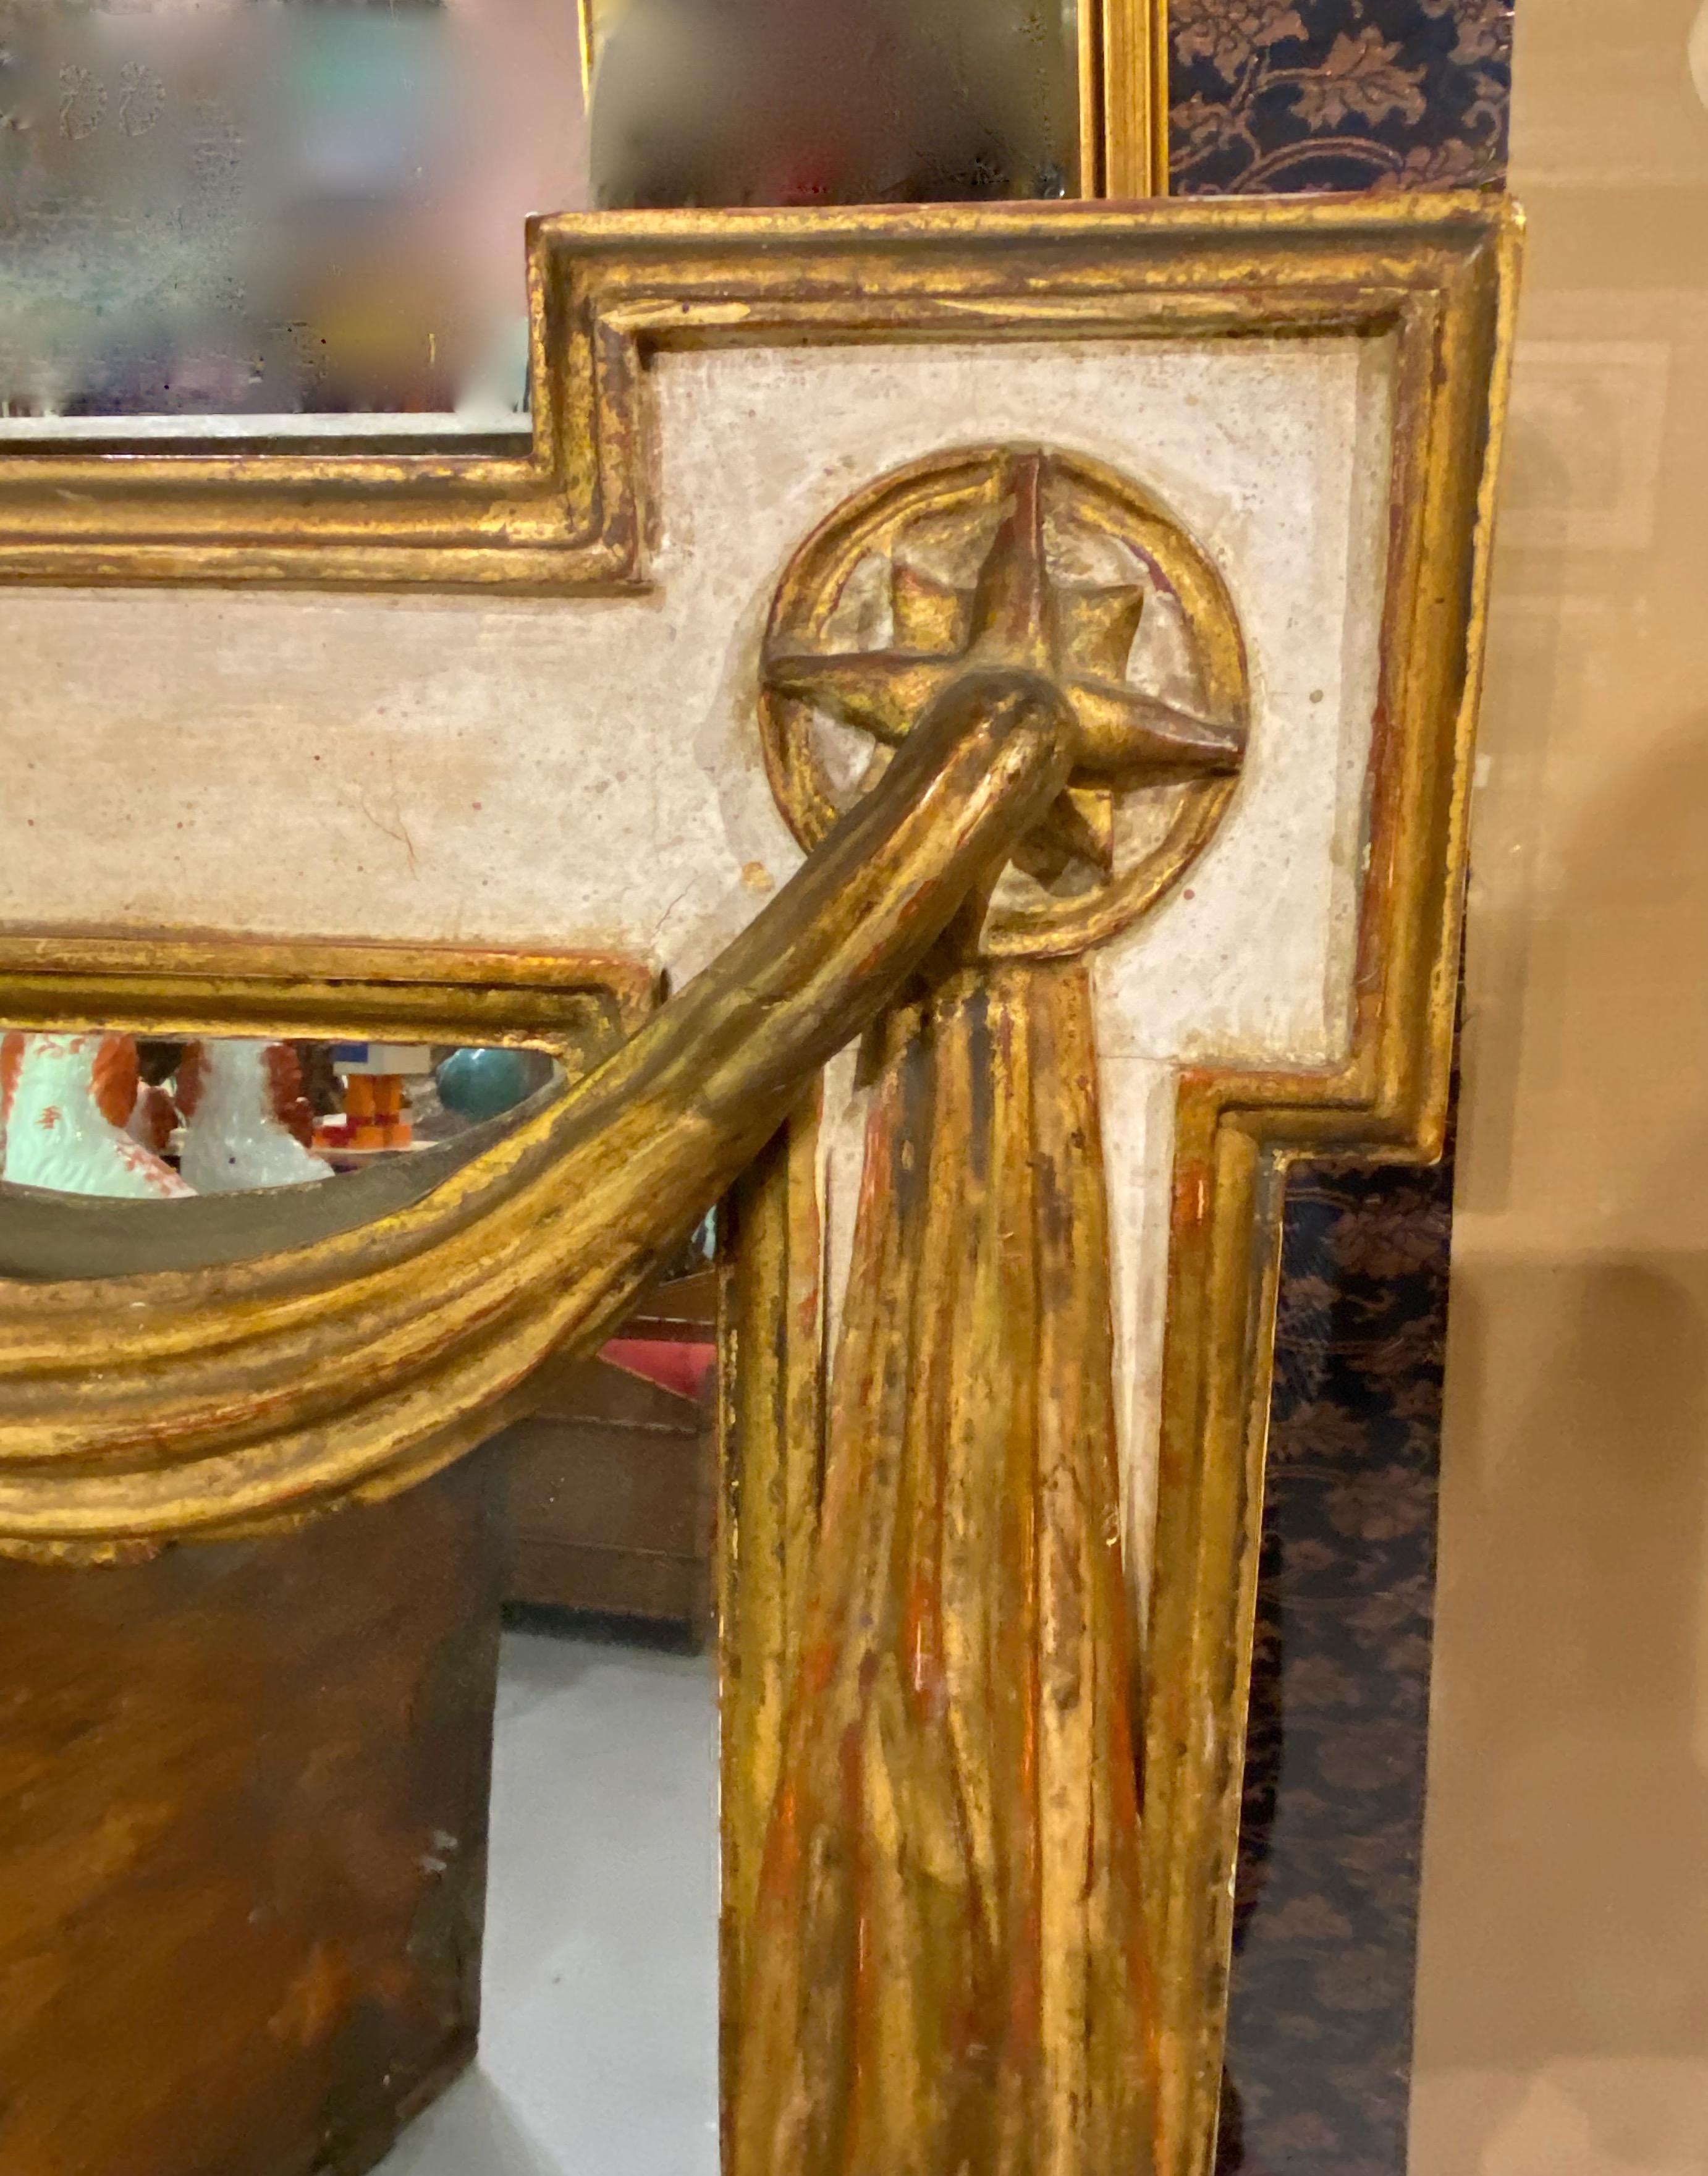 Dies ist ein beeindruckender Spiegel des späten 20. Jahrhunderts im venezianischen Stil. Der Spiegel zeigt eine große geschnitzte und mit Blattgold verzierte Schale in der Mitte, die von einer Draperie im neoklassischen Stil und mit Blattgold